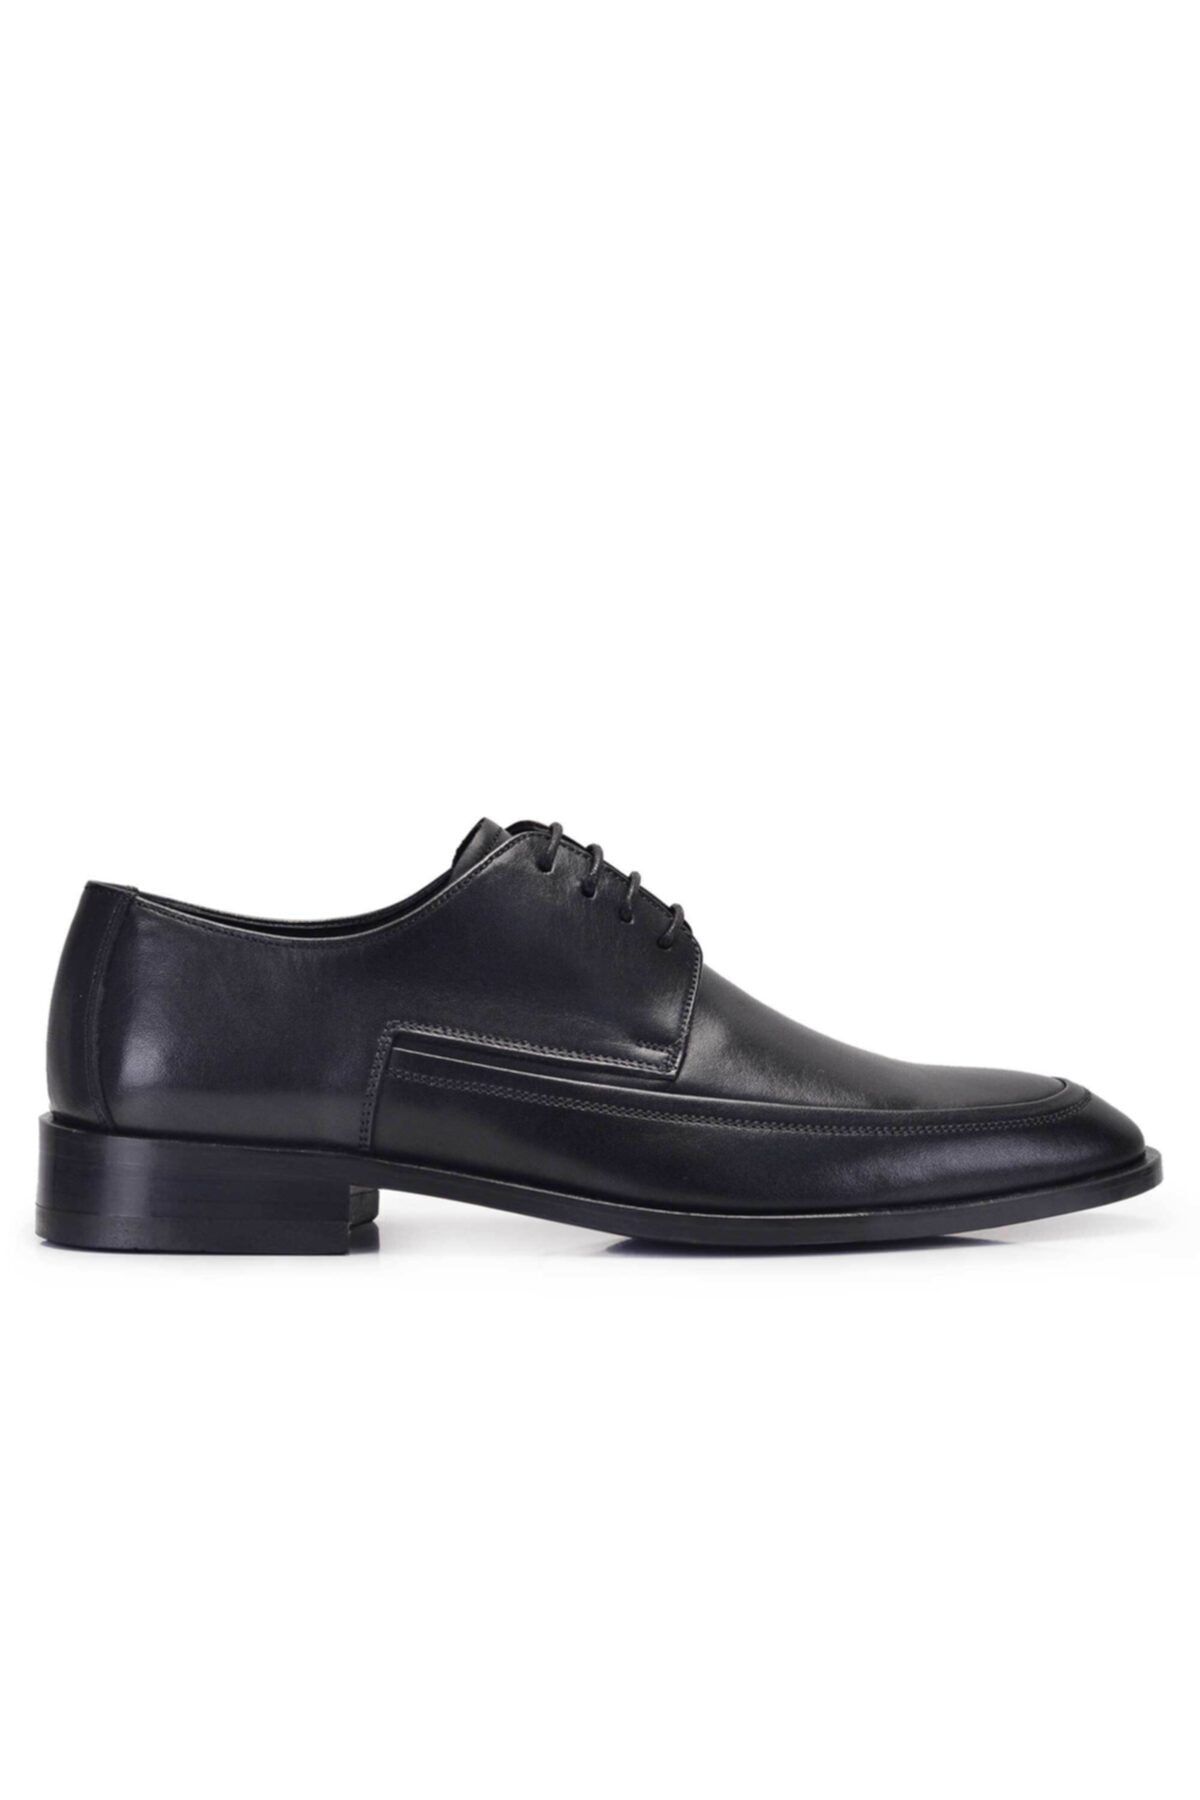 Nevzat Onay Hakiki Deri Siyah Klasik Bağcıklı Kösele Erkek Ayakkabı -11585-